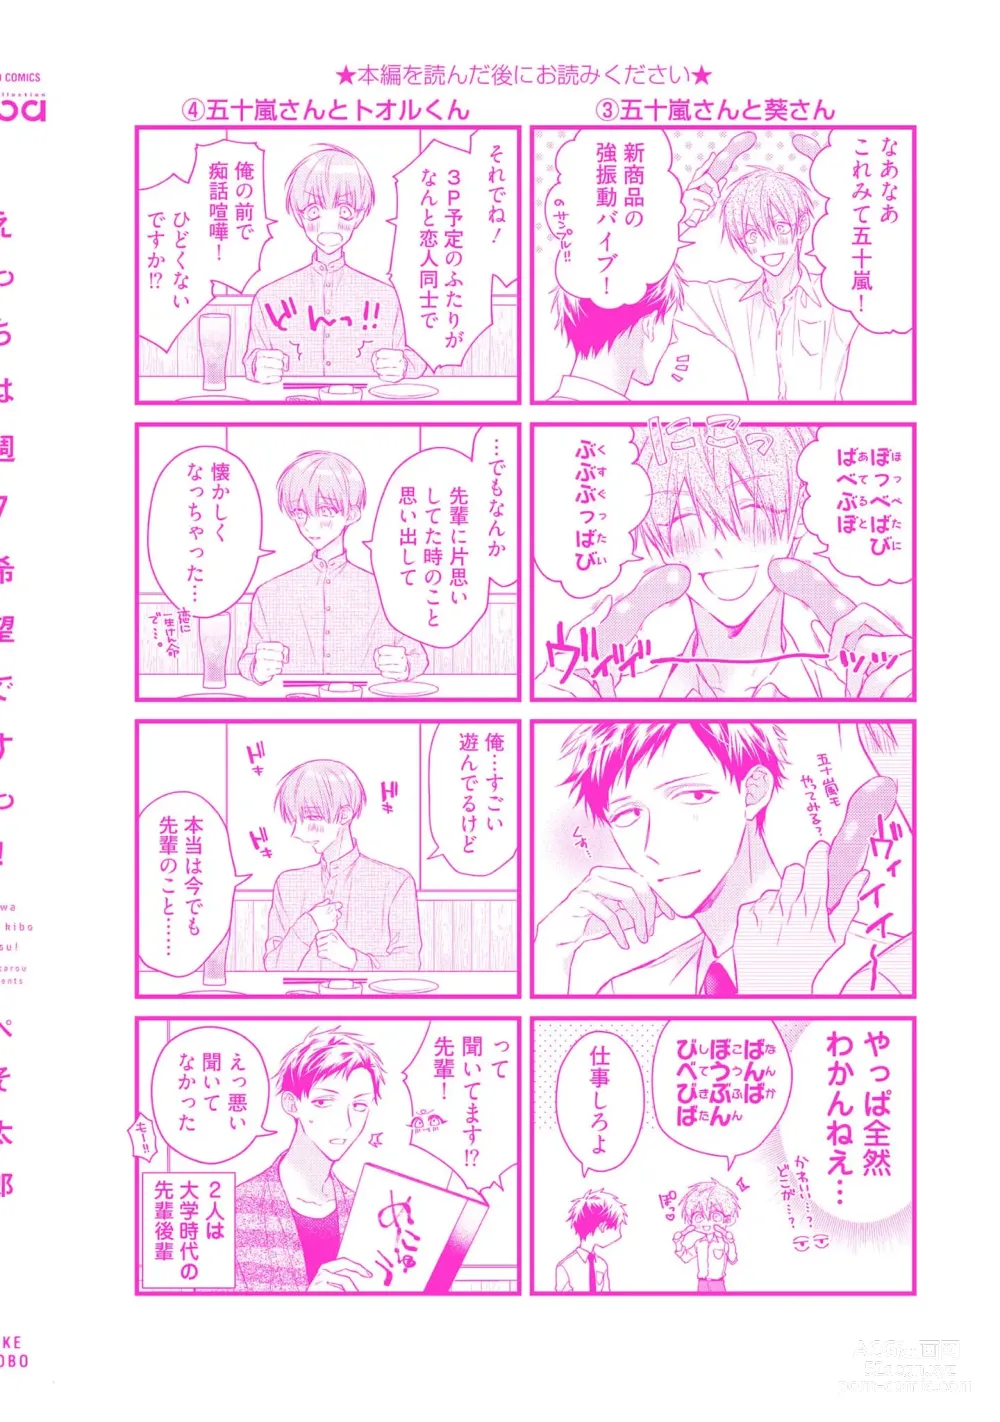 Page 198 of manga Ecchi wa shuu 7 Kibou Desu!